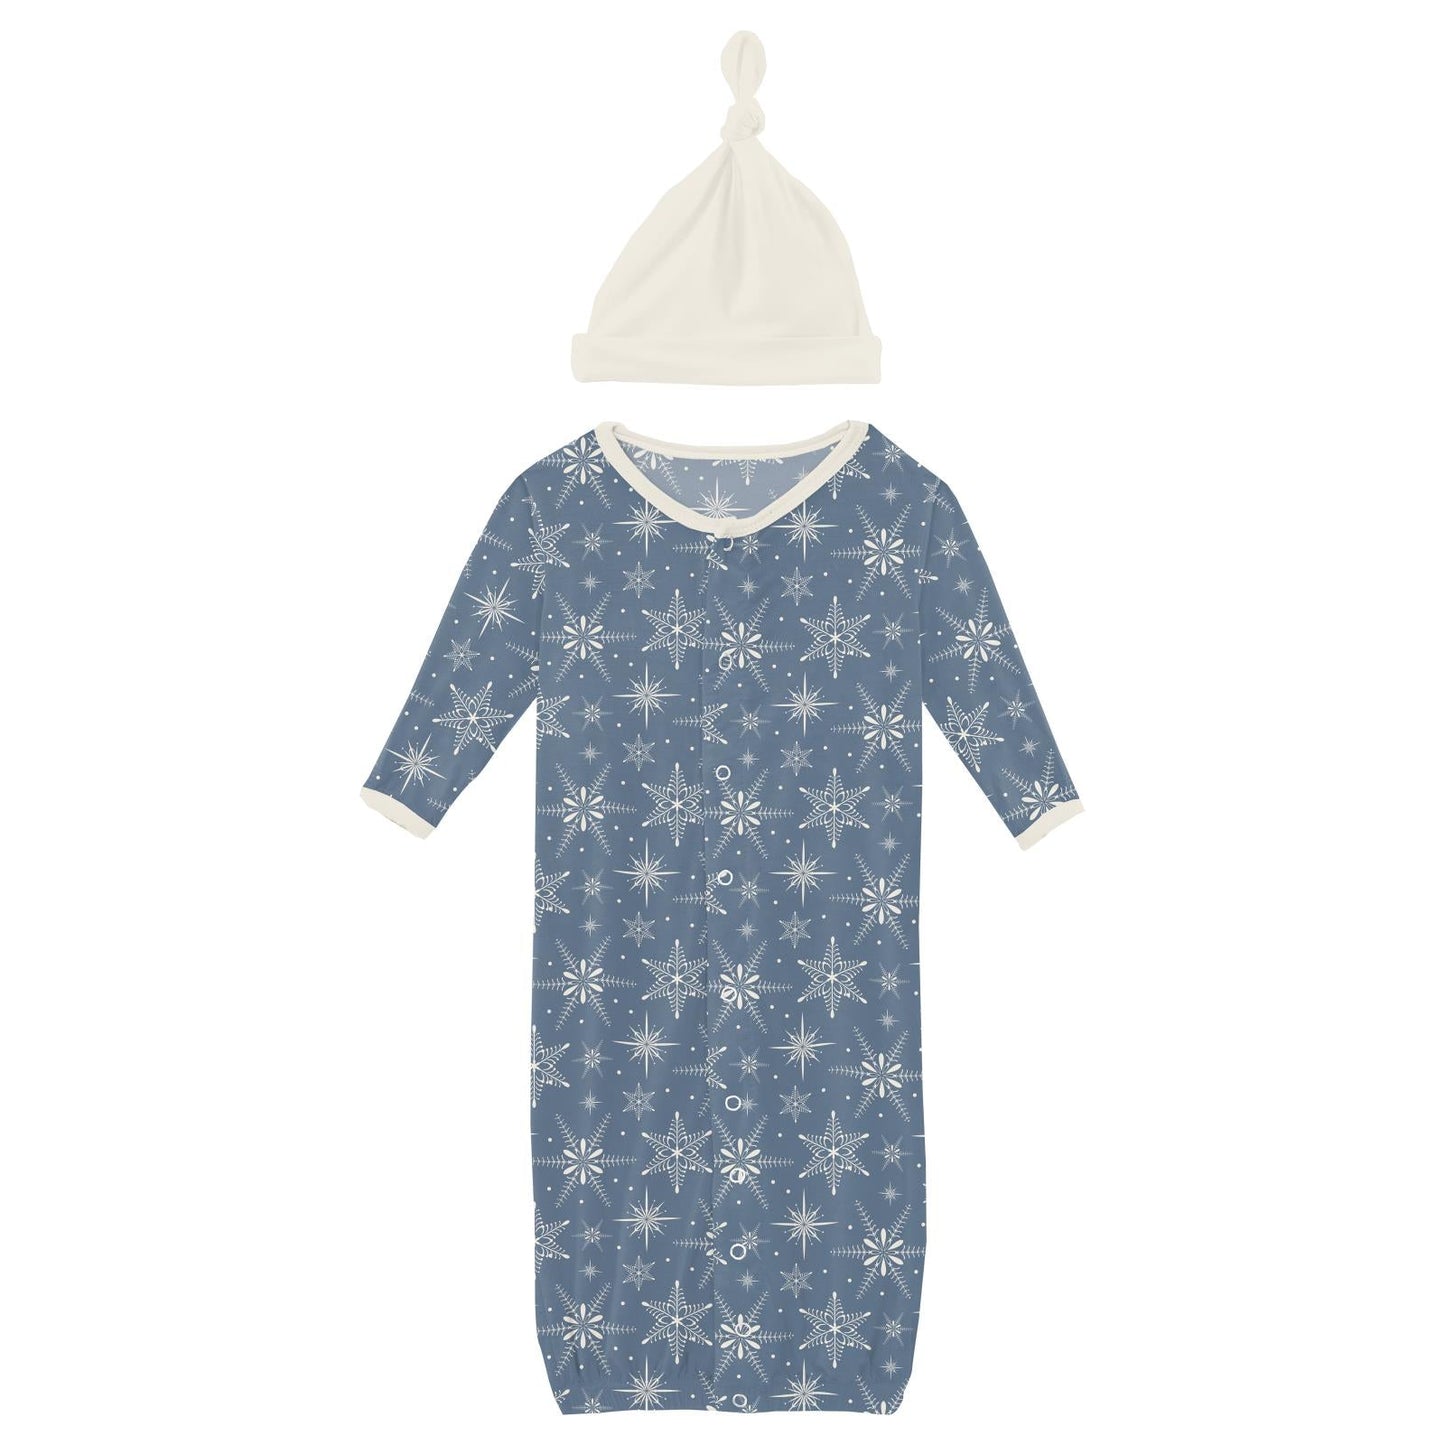 Parisian Blue Snowflakes Gown Converter Hat Set-NB